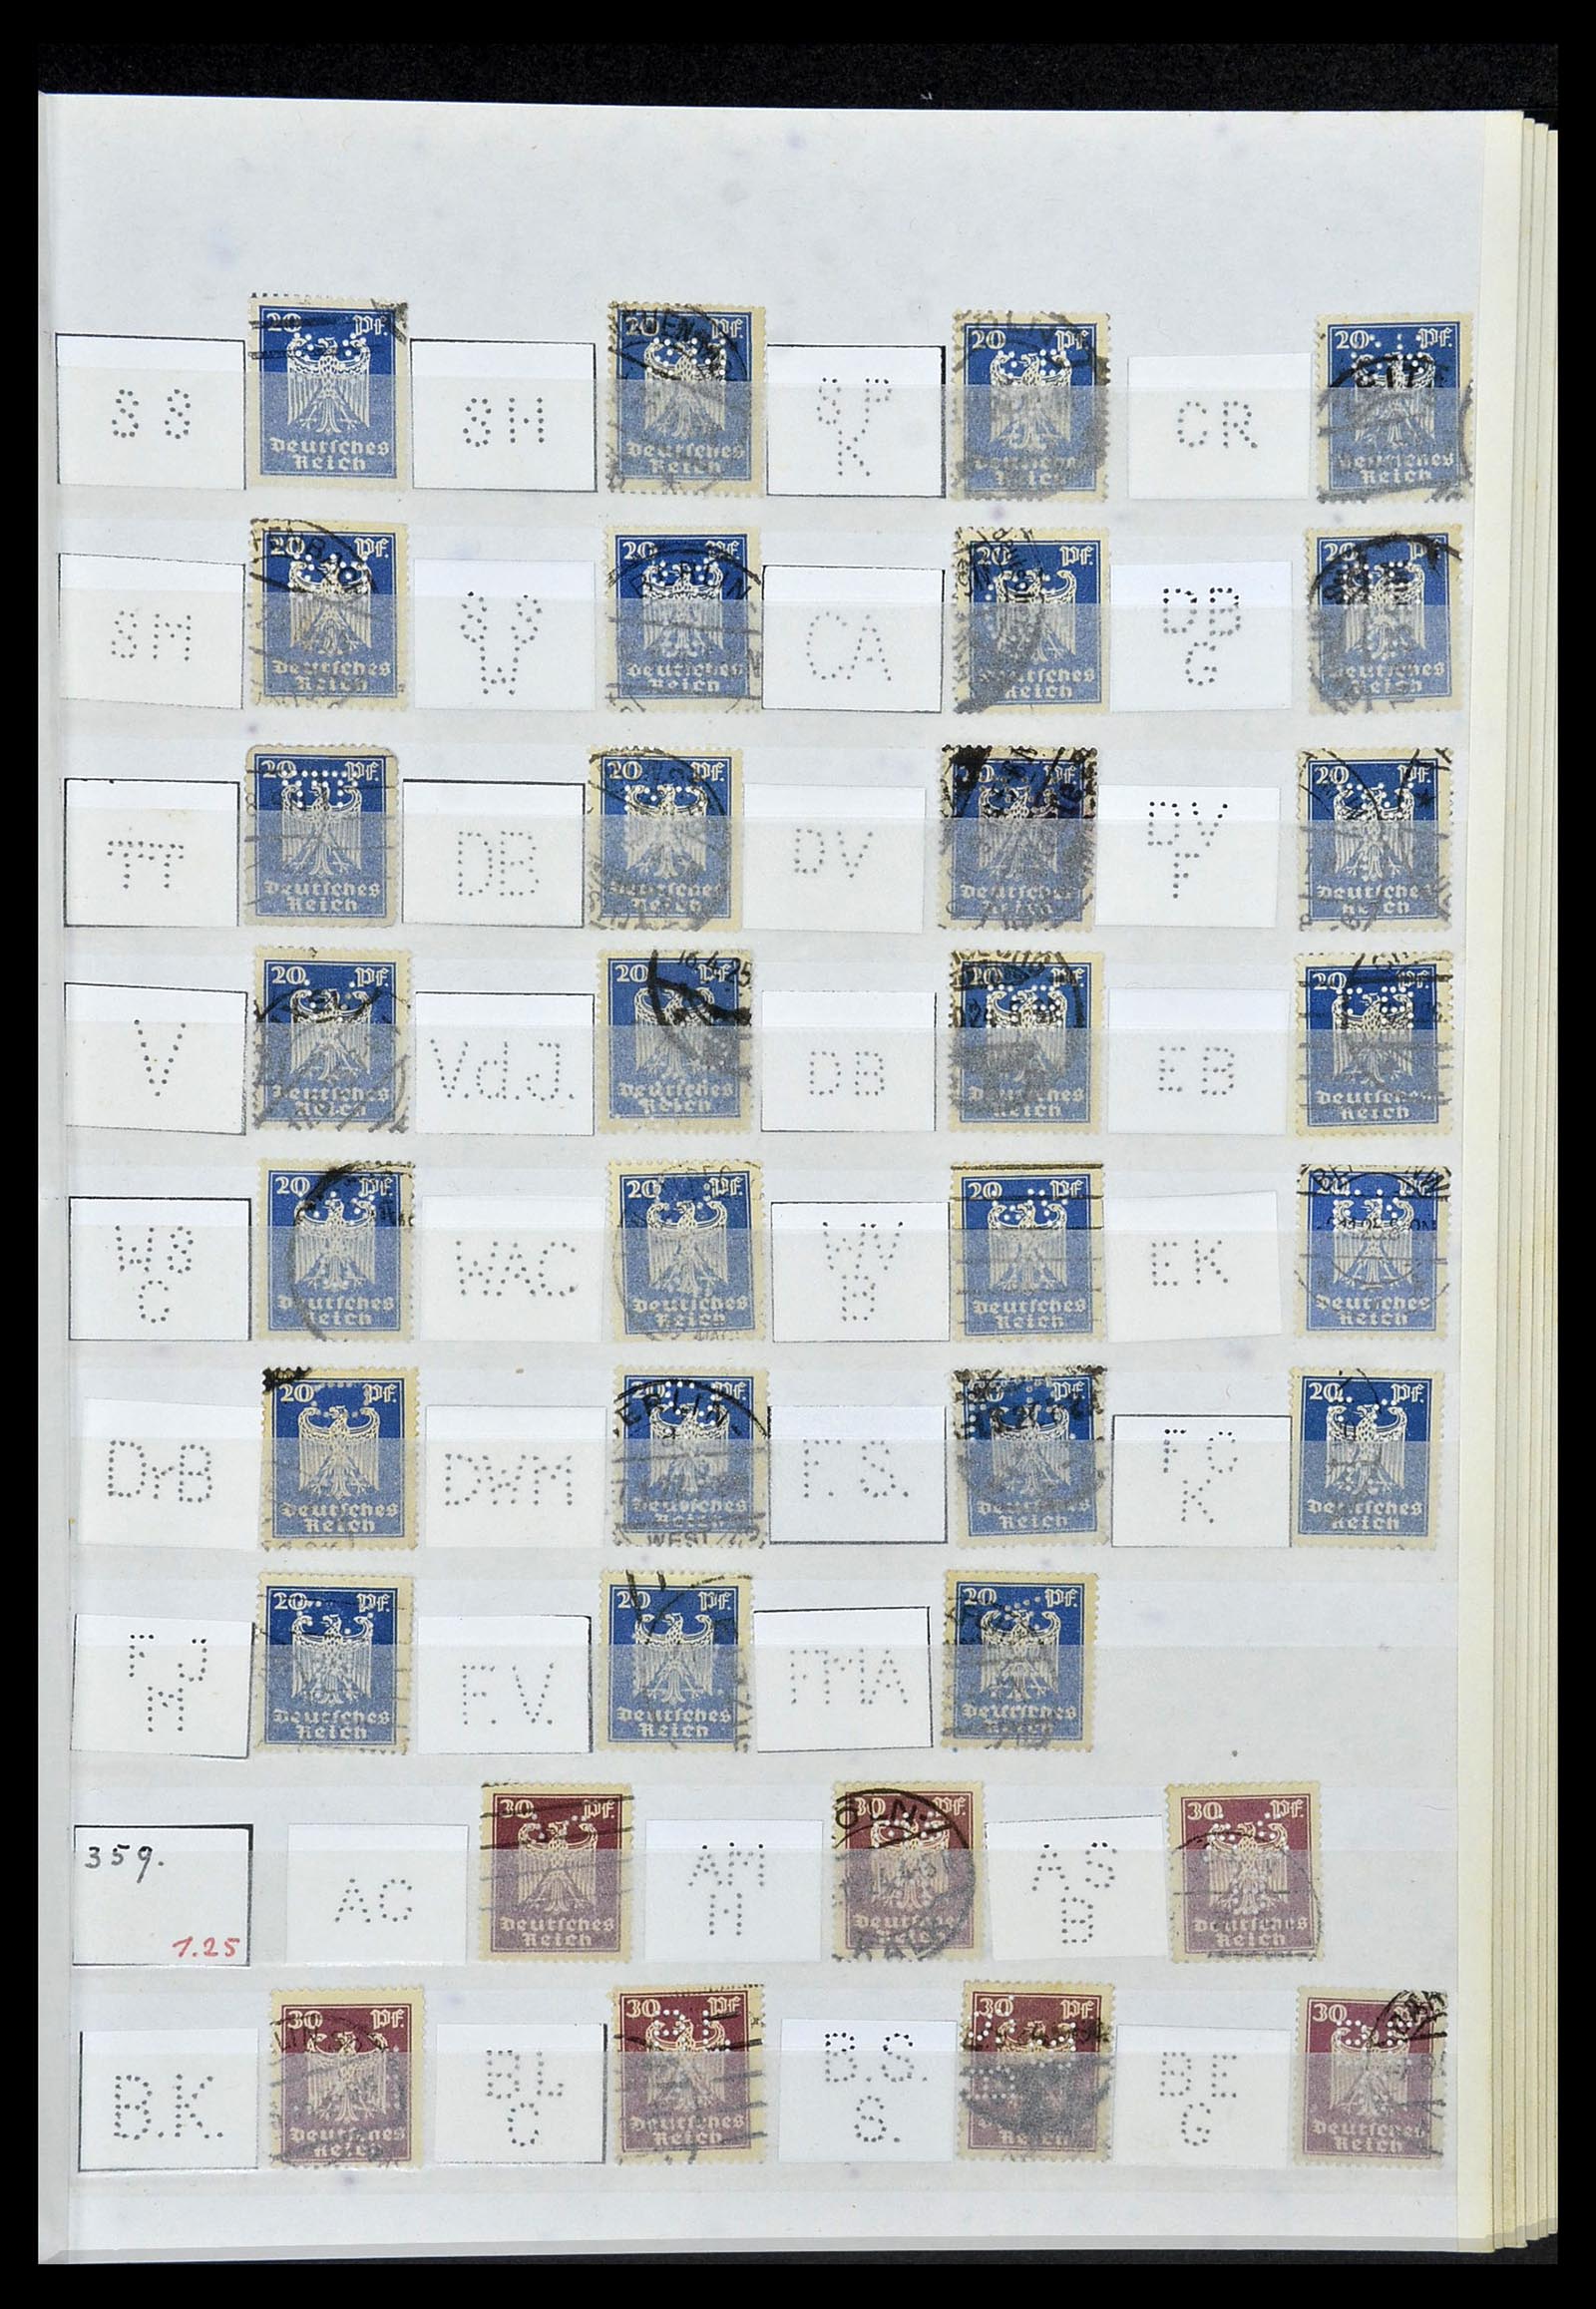 34071 035 - Stamp collection 34071 German Reich perfins 1923-1930.